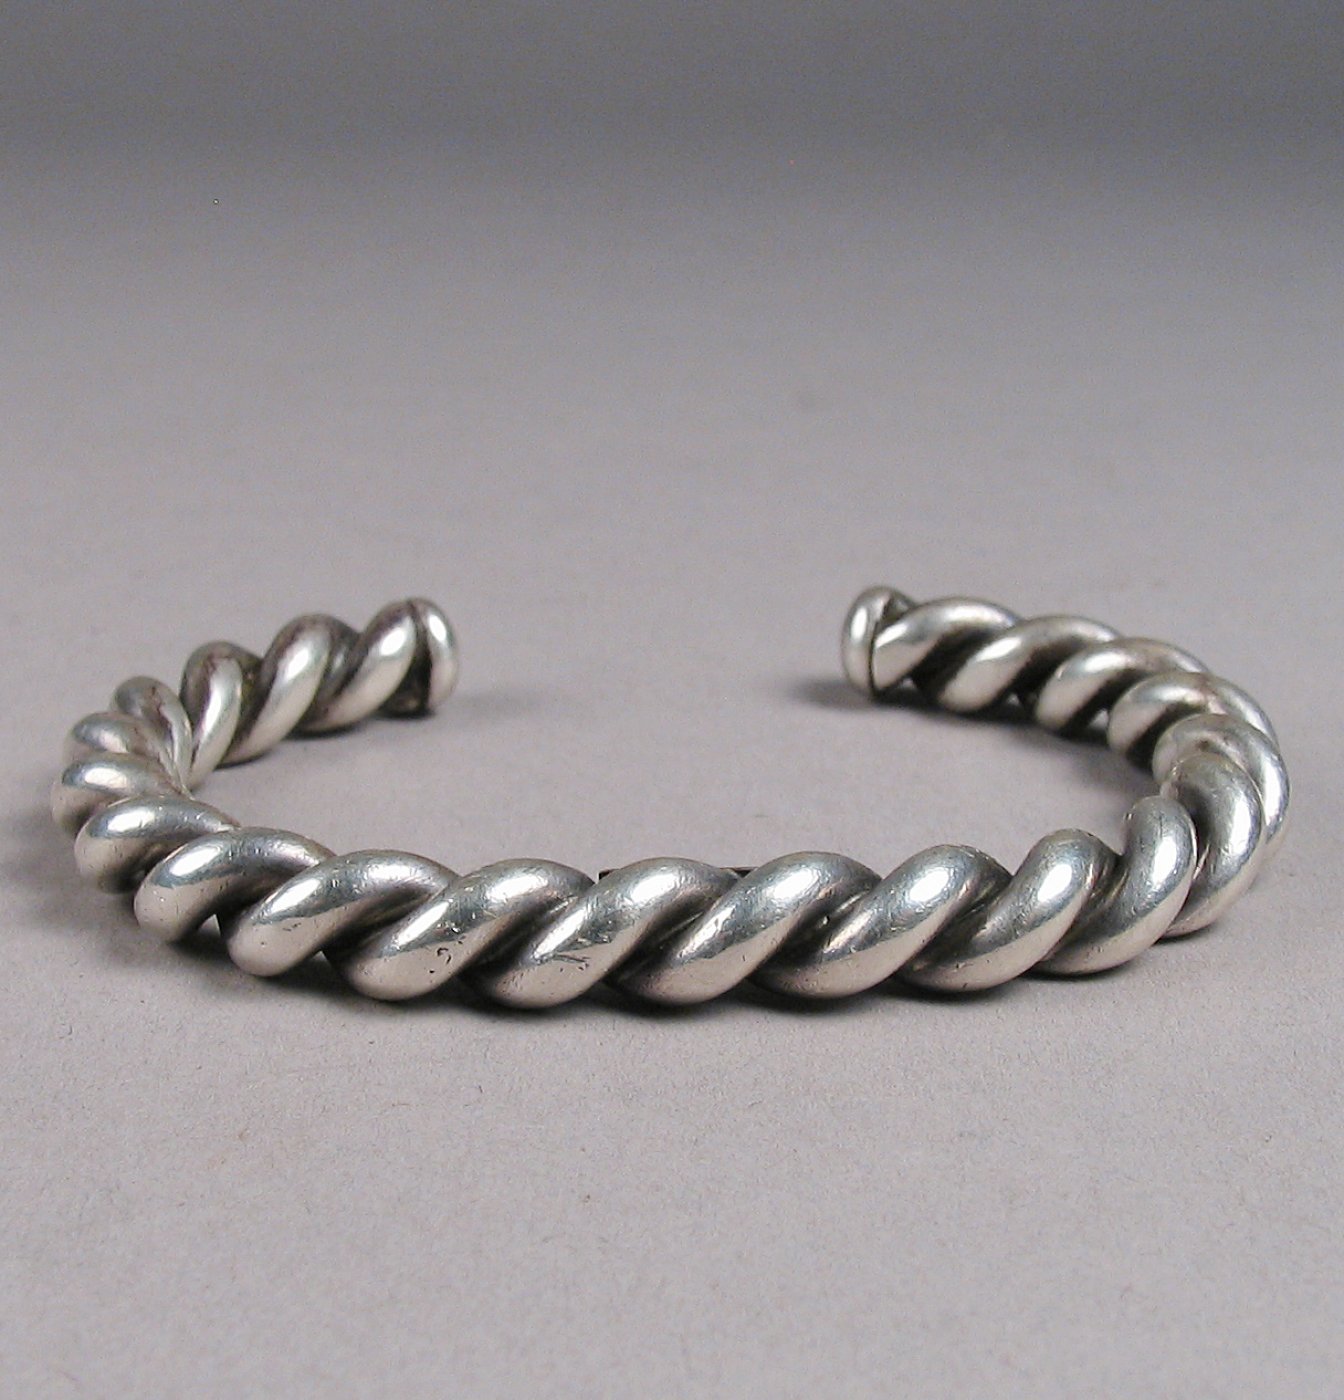 Twisted Silver Wire Bracelet, c.1950 | Shiprock Santa Fe